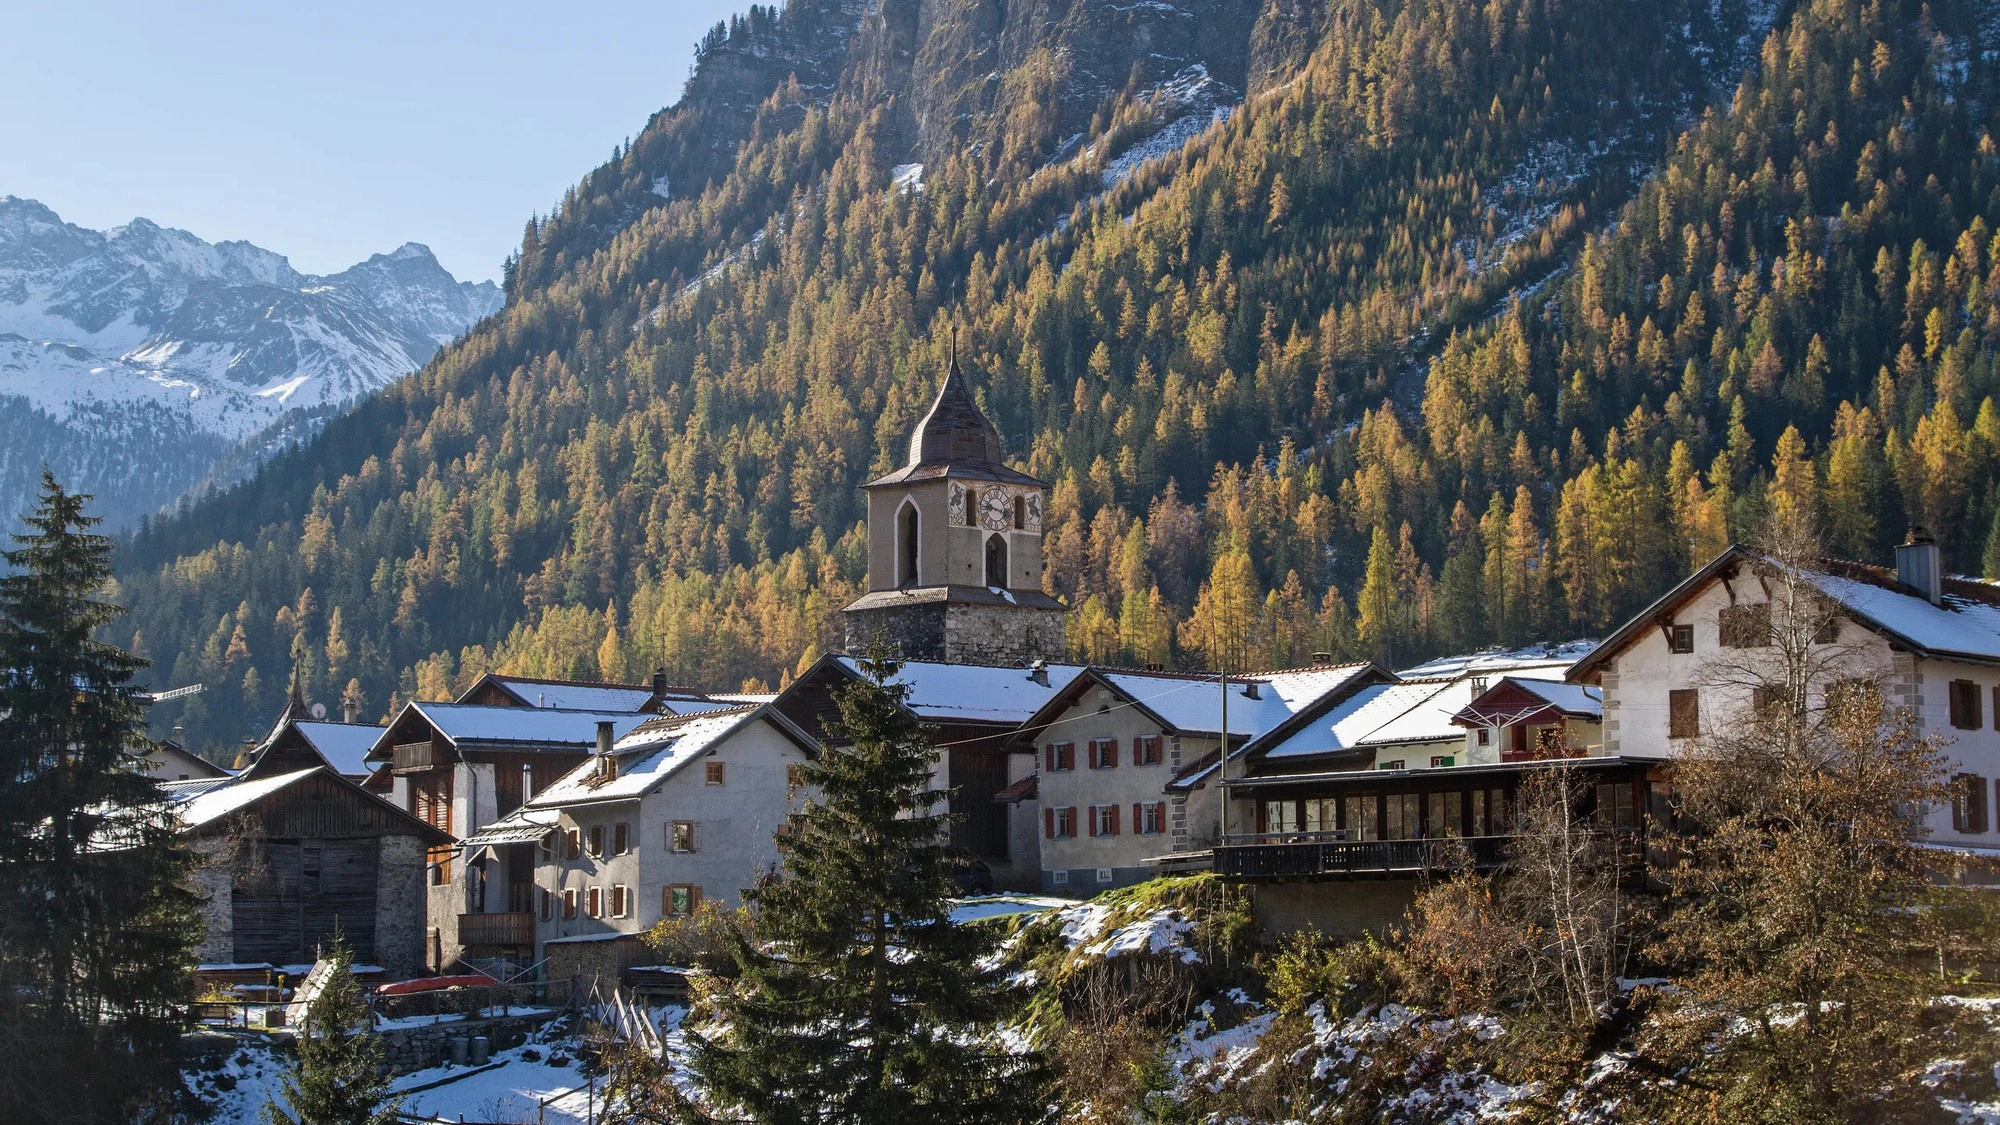 Một ngôi làng ở Thụy Sĩ cấm du khách chụp ảnh vì quá đẹp - 3